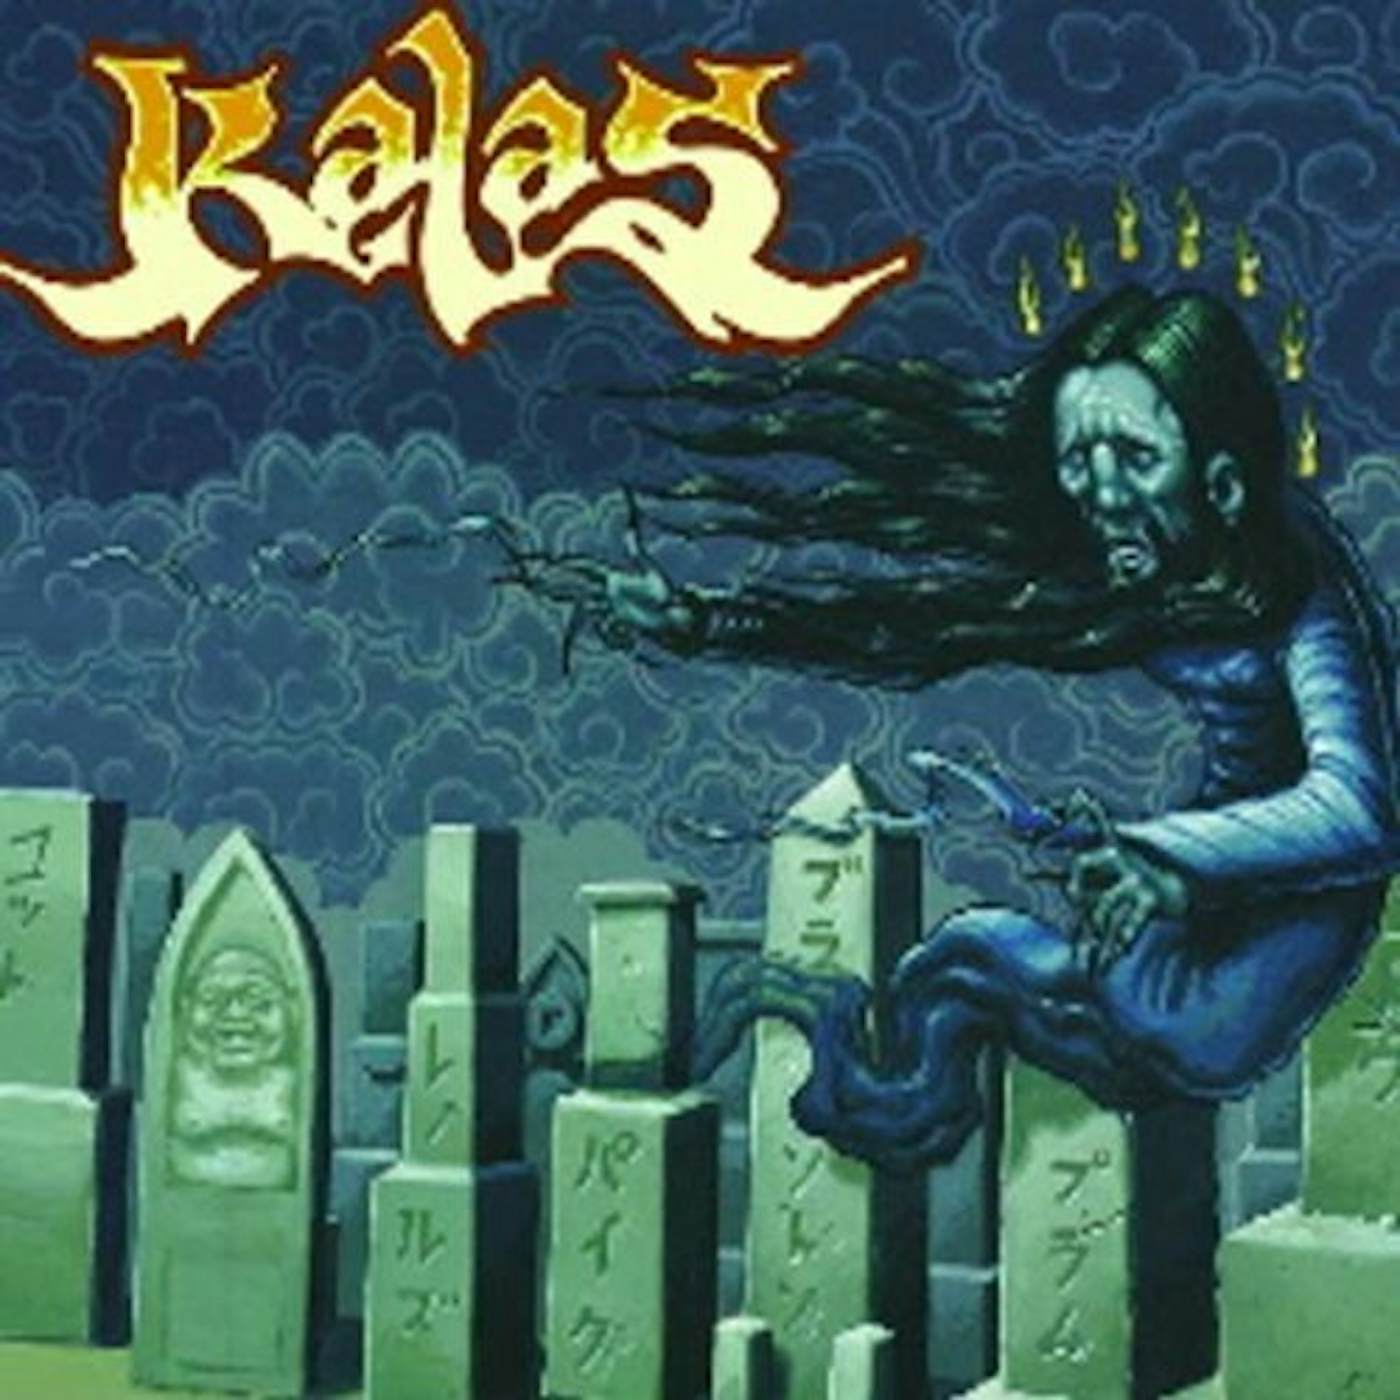 Kalas Vinyl Record